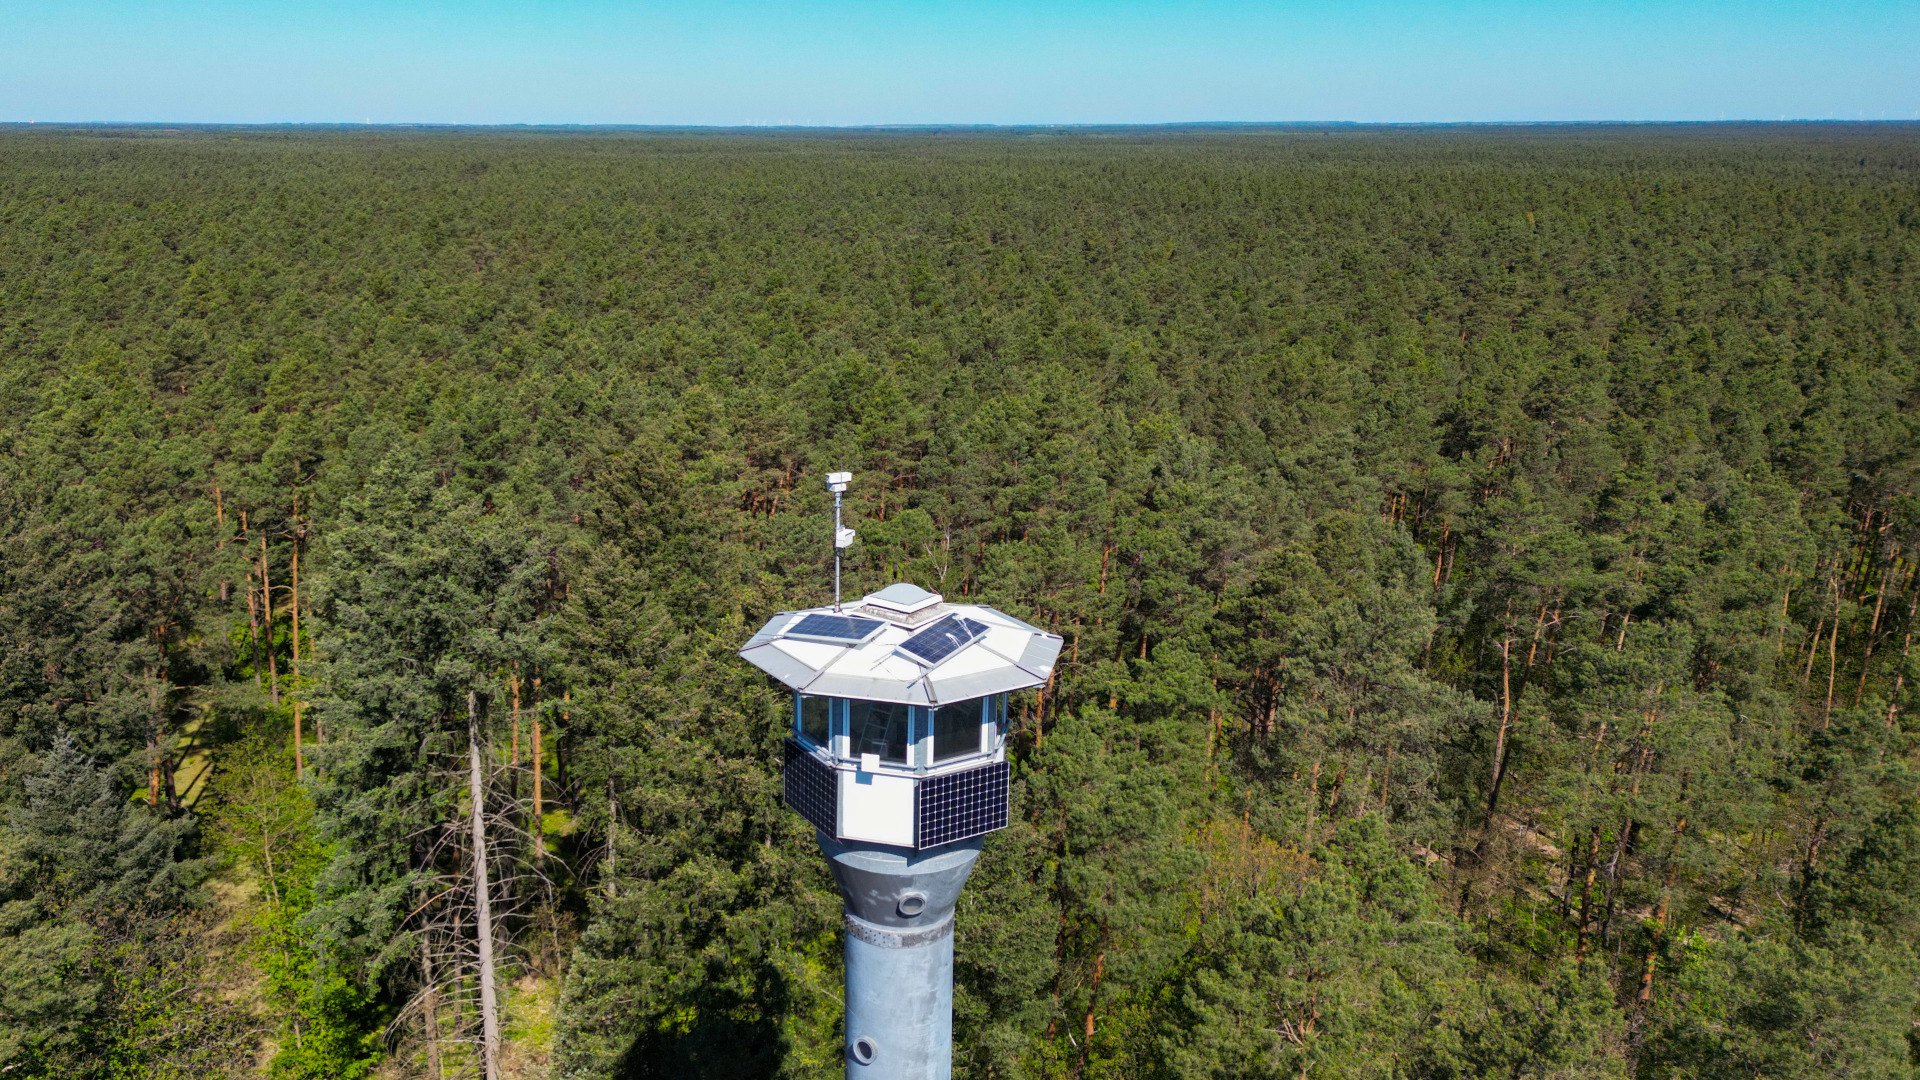 Funktechnik, Photovoltaikmodule sowie eine Kamera sind auf dem Dach eines Feuerwachturms vom Landesbetrieb Forst Brandenburg angebracht (Quelle: DPA/Patrick Pleul)